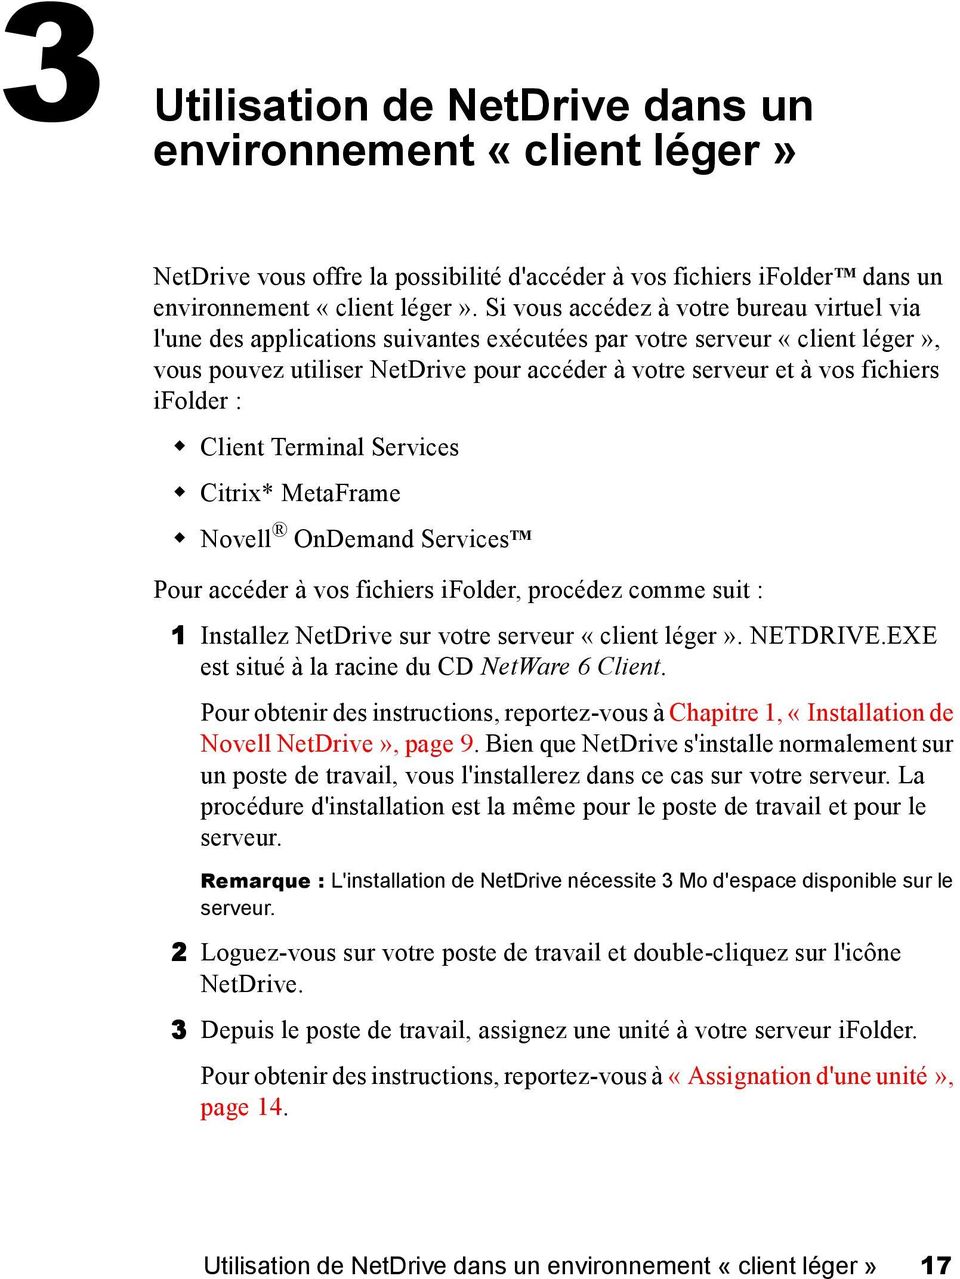 ifolder : Client Terminal Services Citrix* MetaFrame Novell OnDemand Services TM Pour accéder à vos fichiers ifolder, procédez comme suit : 1 Installez NetDrive sur votre serveur «client léger».